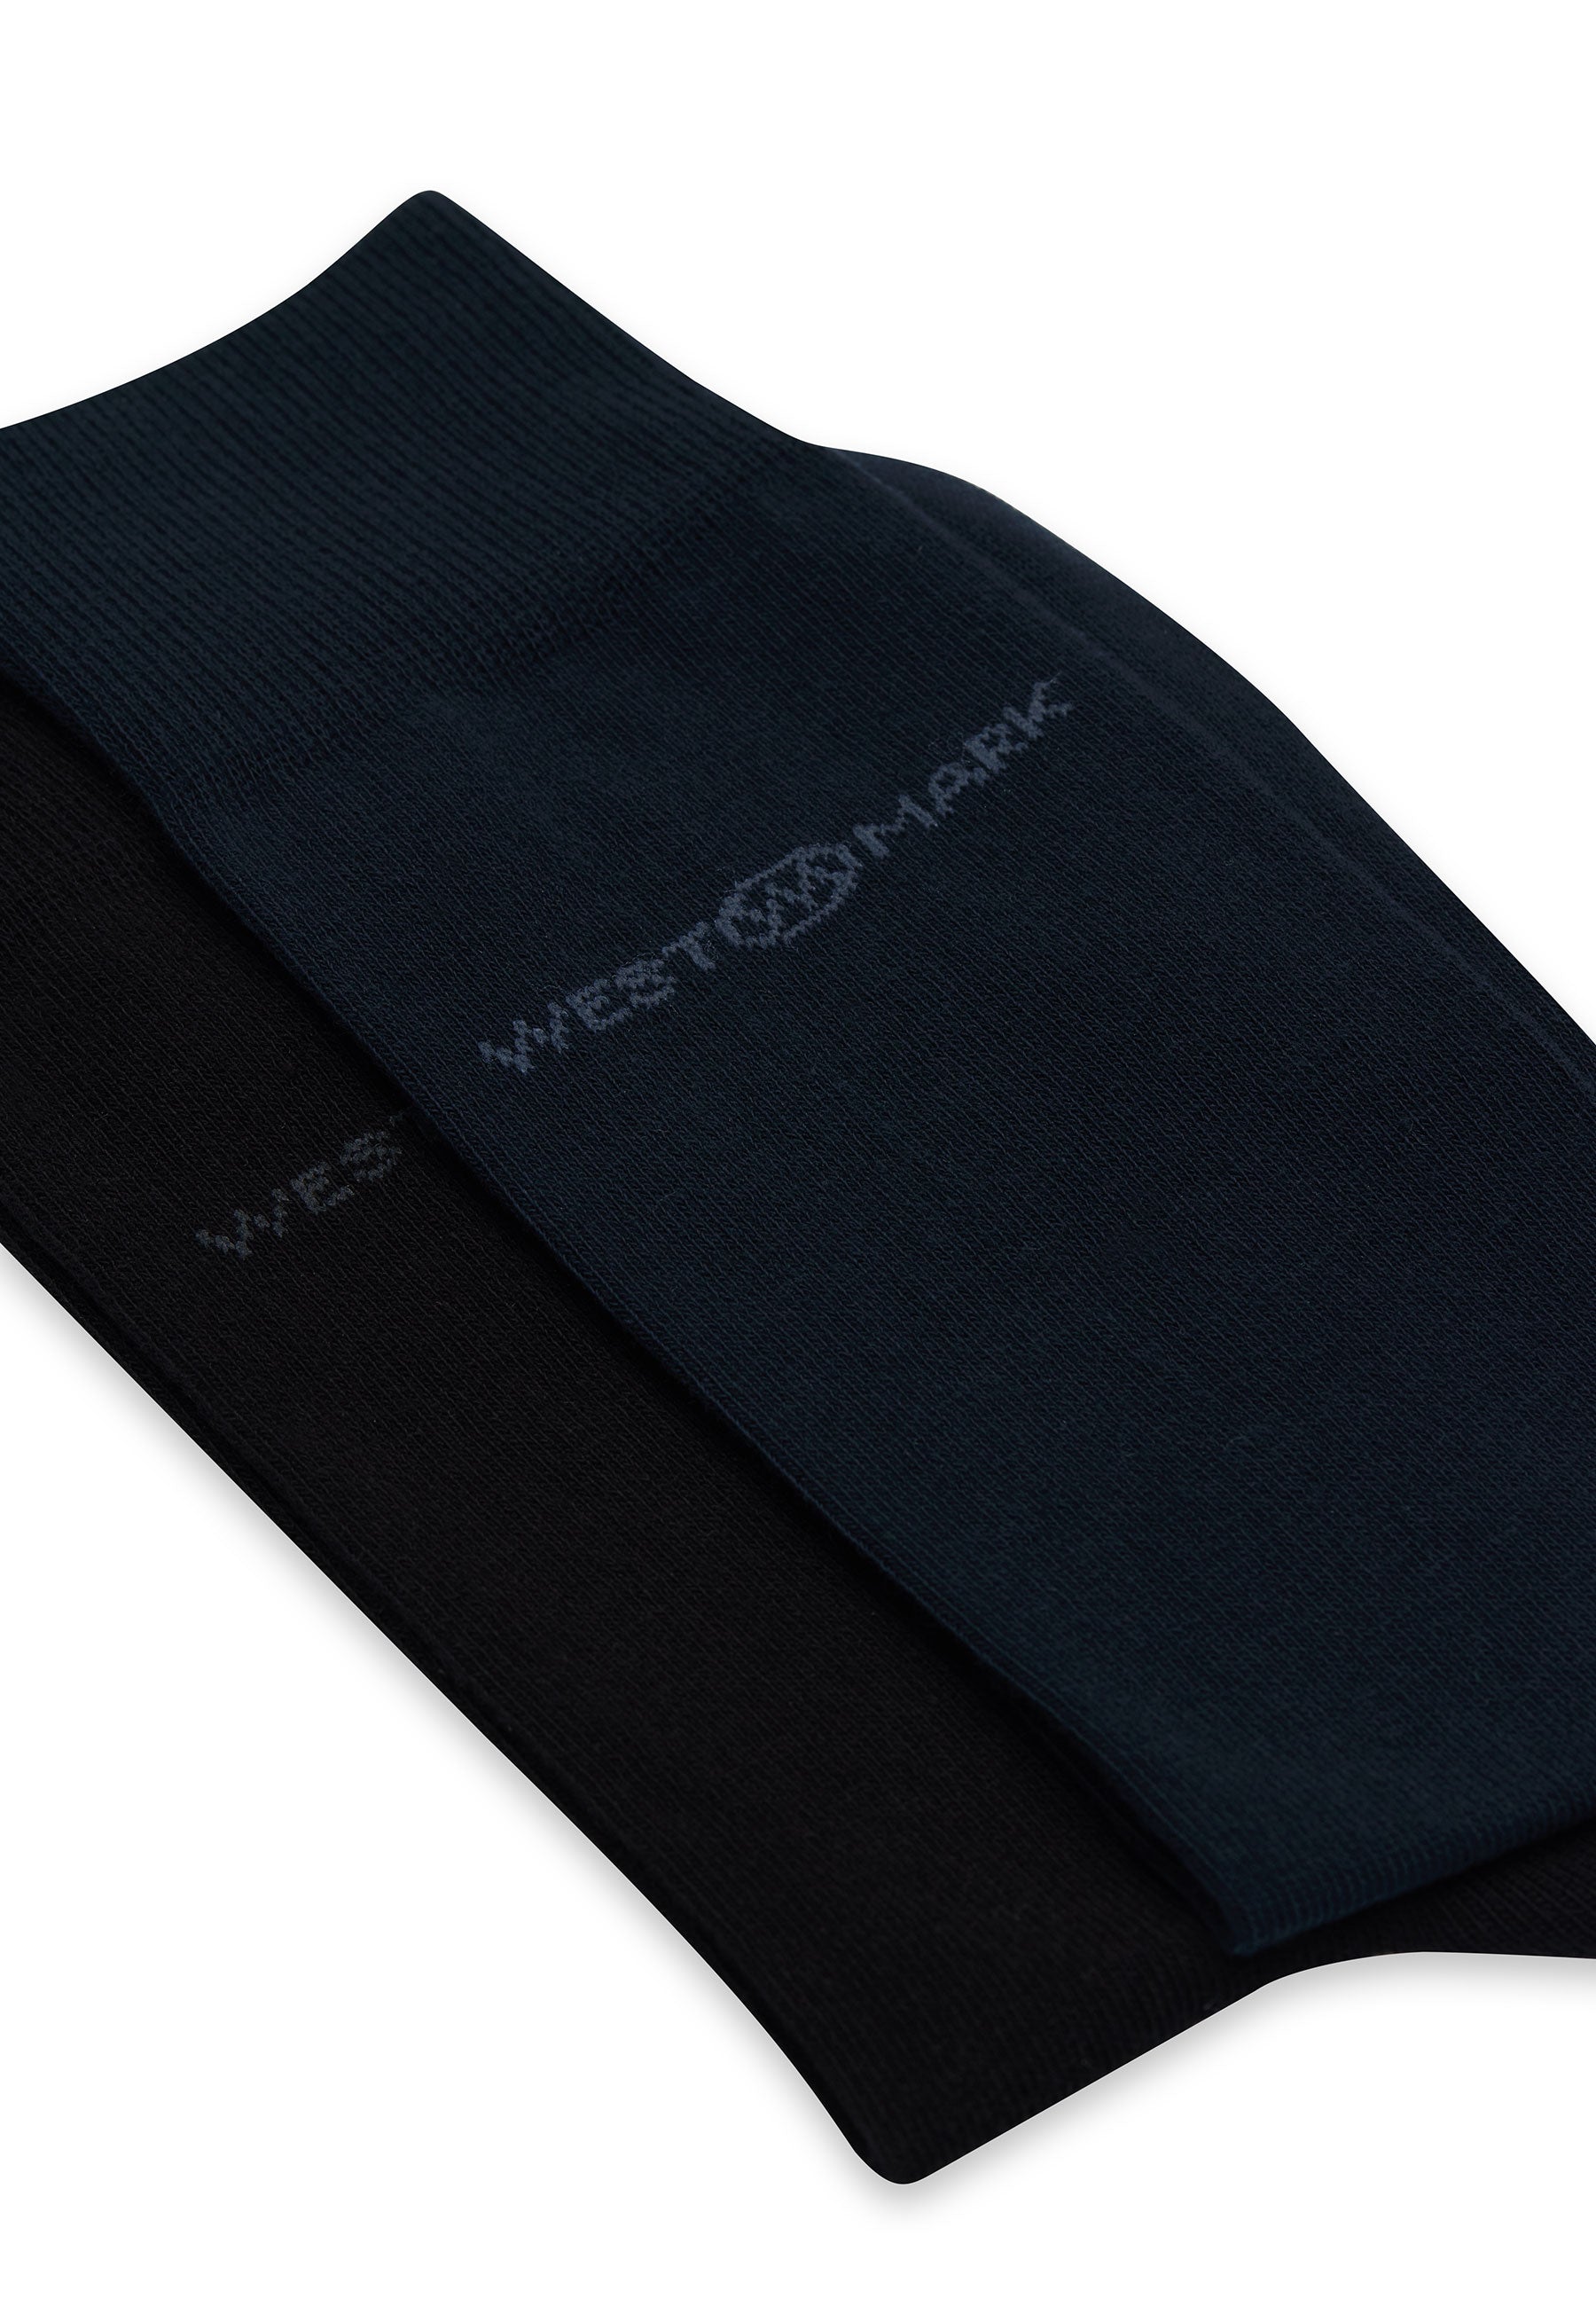 6’lı Siyah Lacivert Pamuk Karışımlı Klasik Erkek Çorap Seti CLASSIC BUSINESS - Socks - Westmark London EU(TR) Store Organik Pamuklu Sürdürülebilir Moda